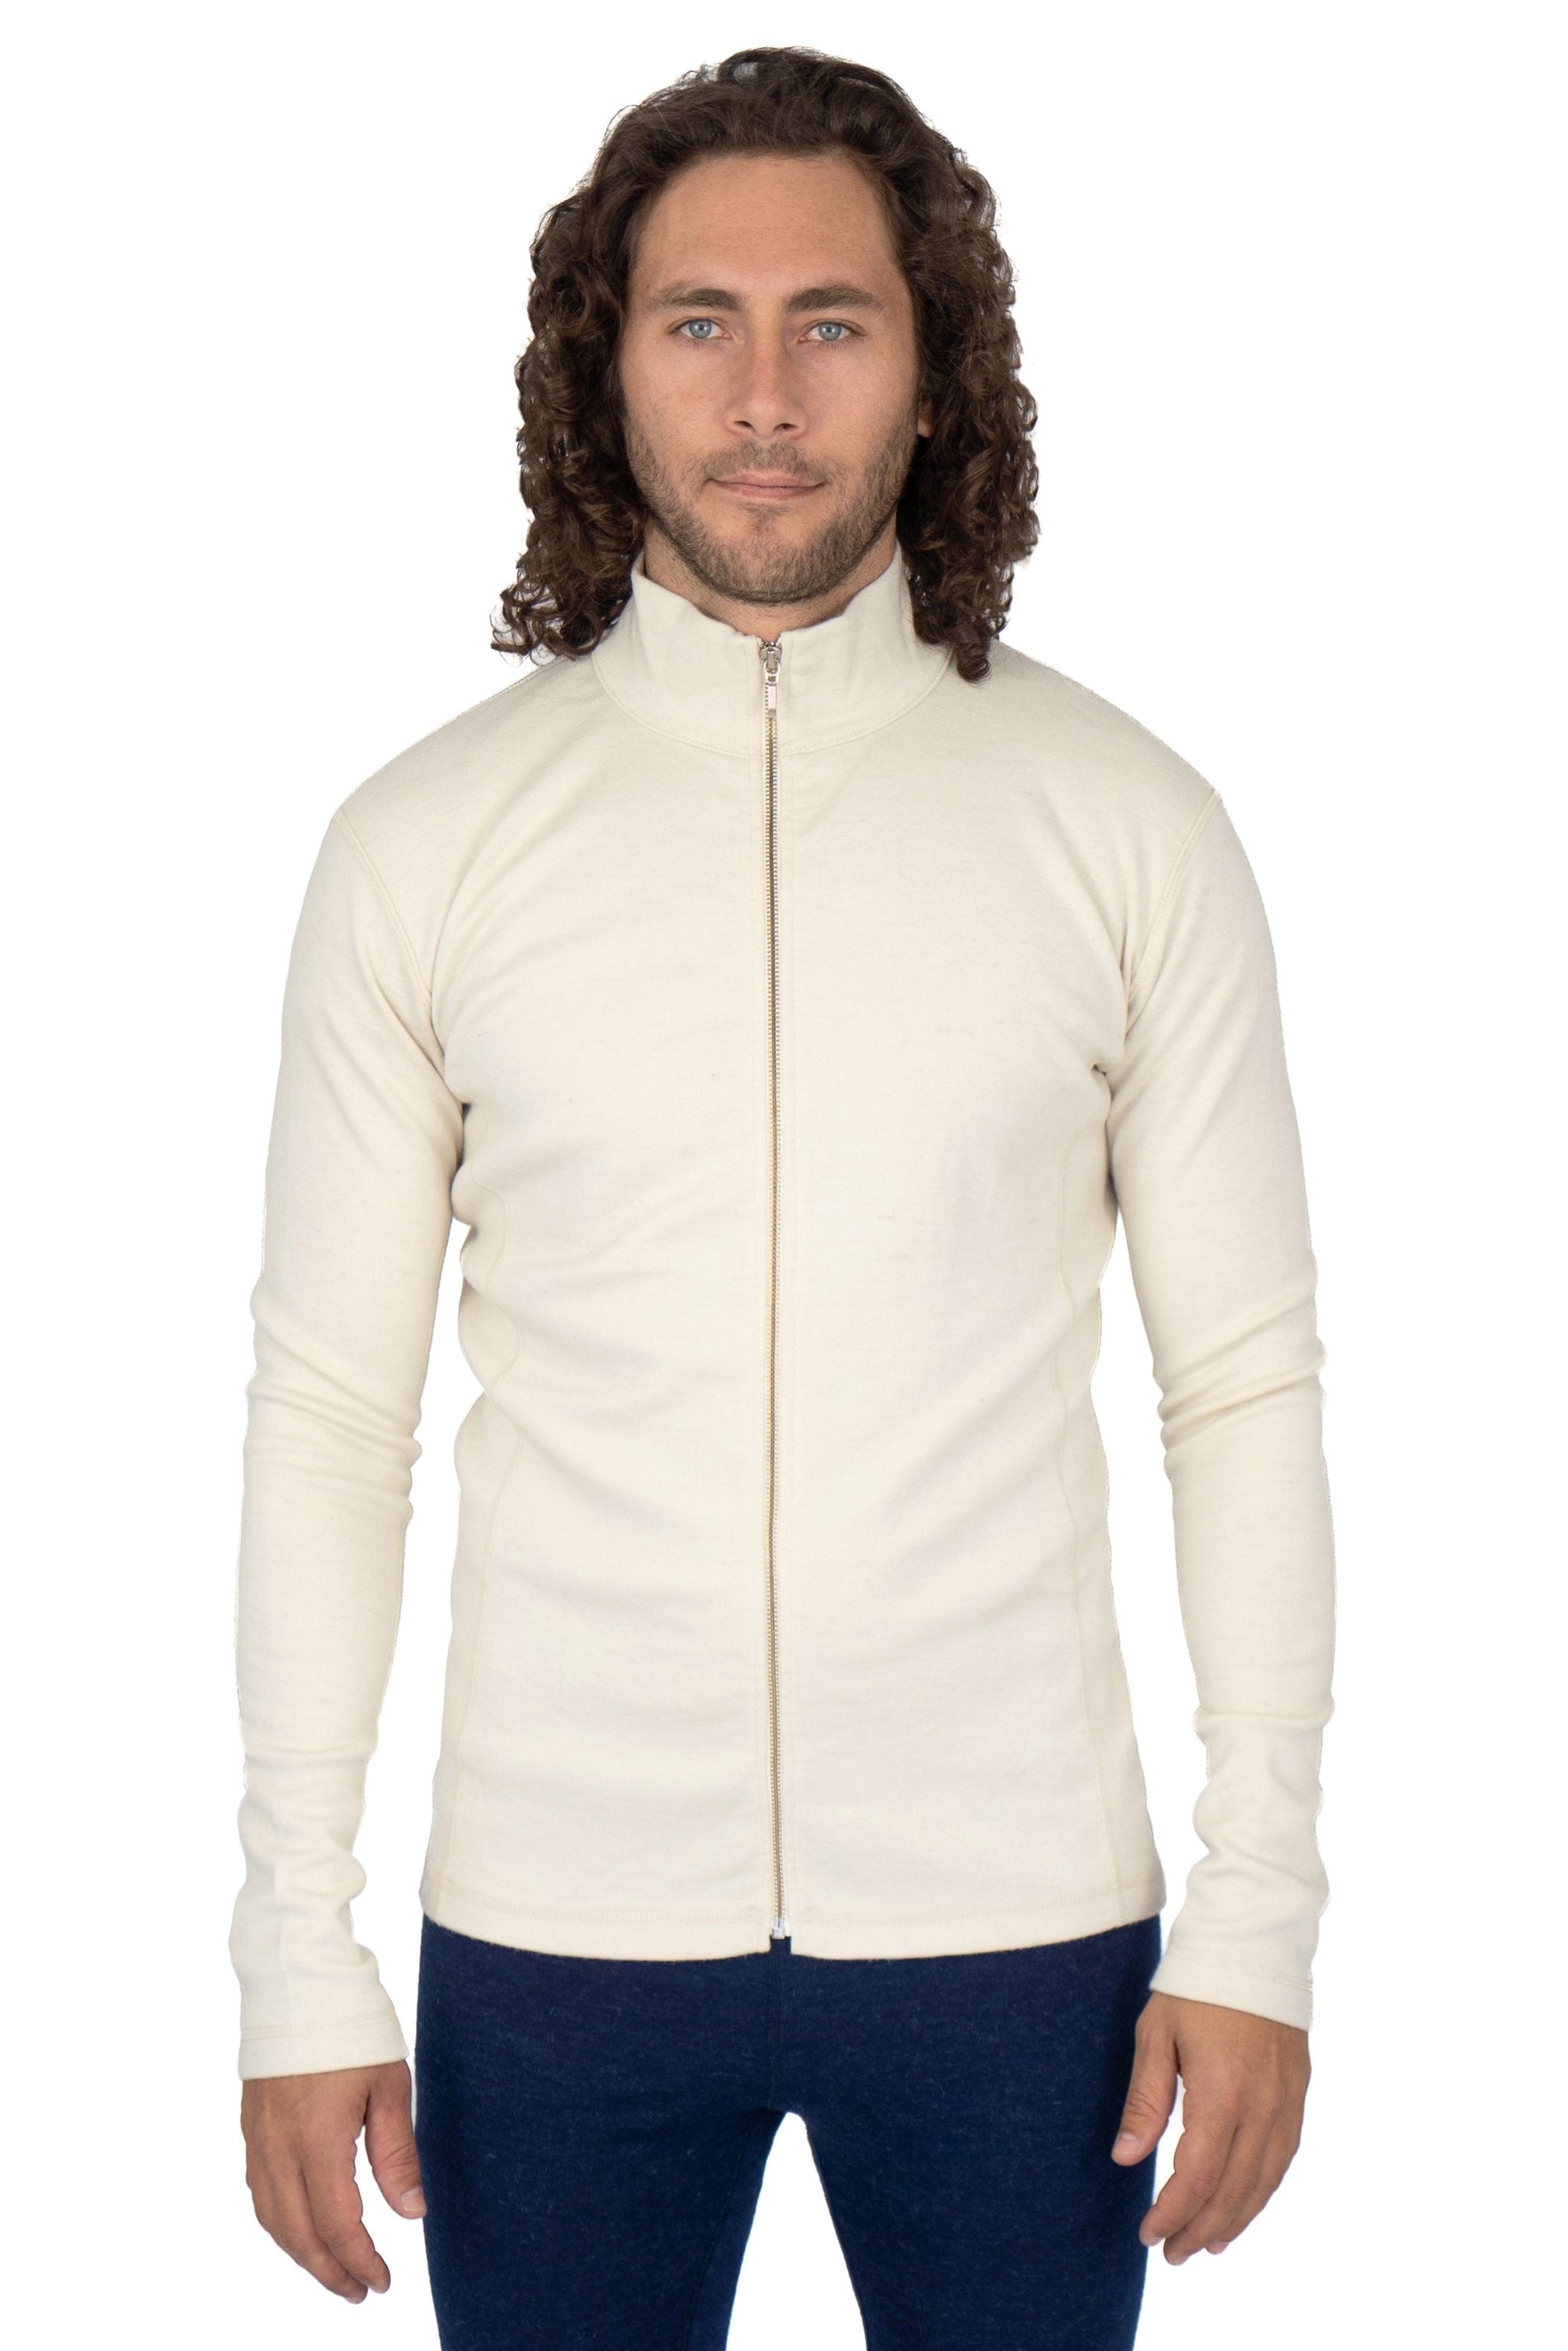 Men's Alpaca Wool Fleece Jacket: 420 Midweight Full-Zip color Natural White